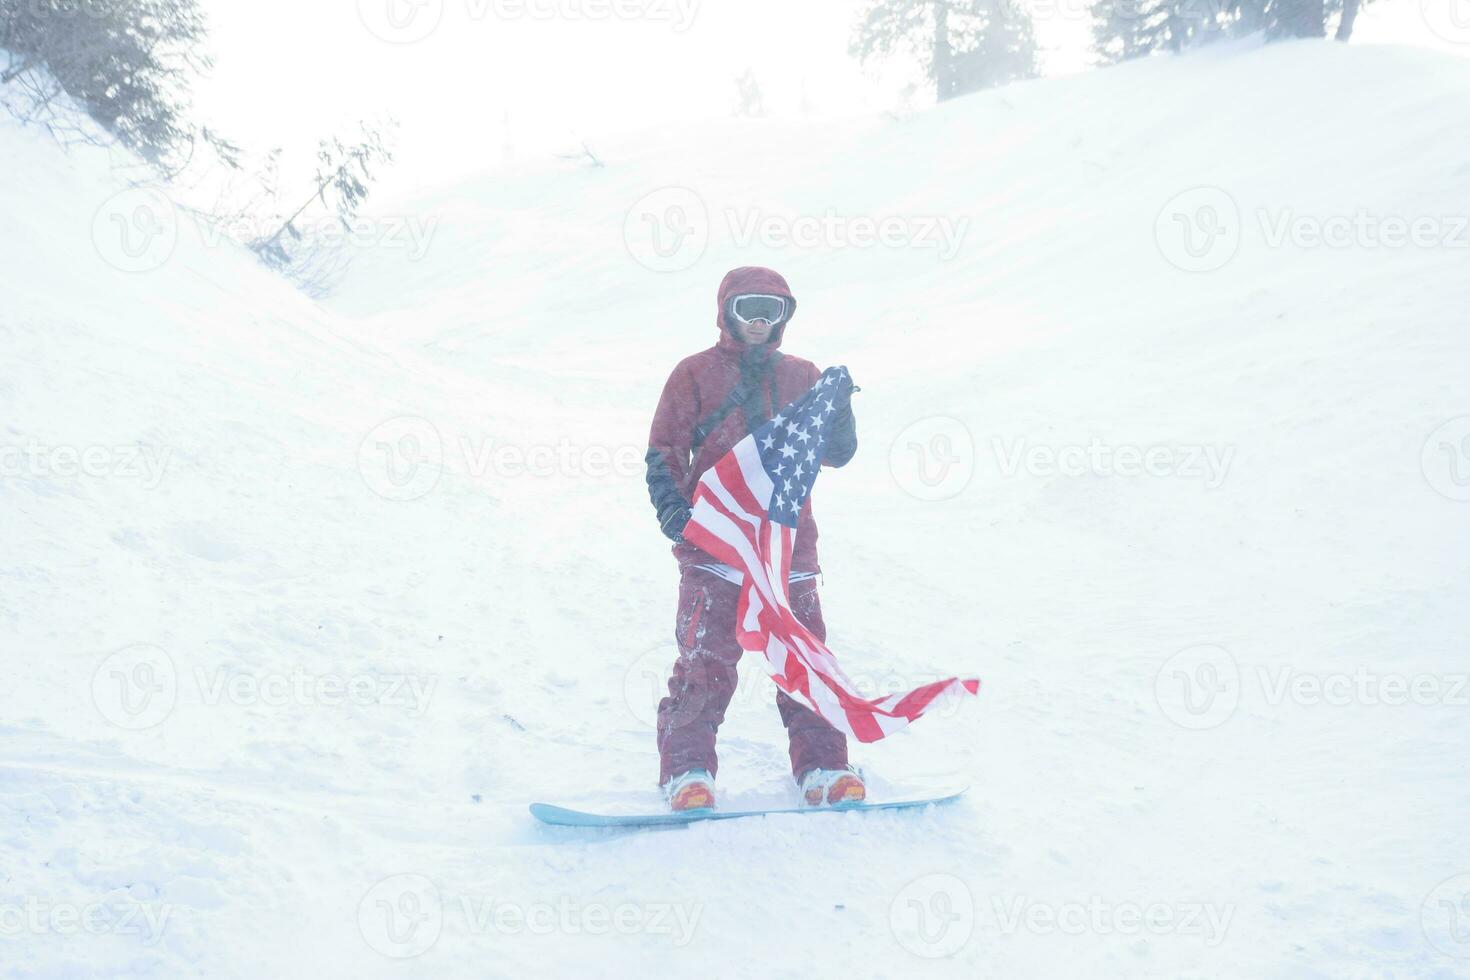 snowboarder est assis haute dans le montagnes photo